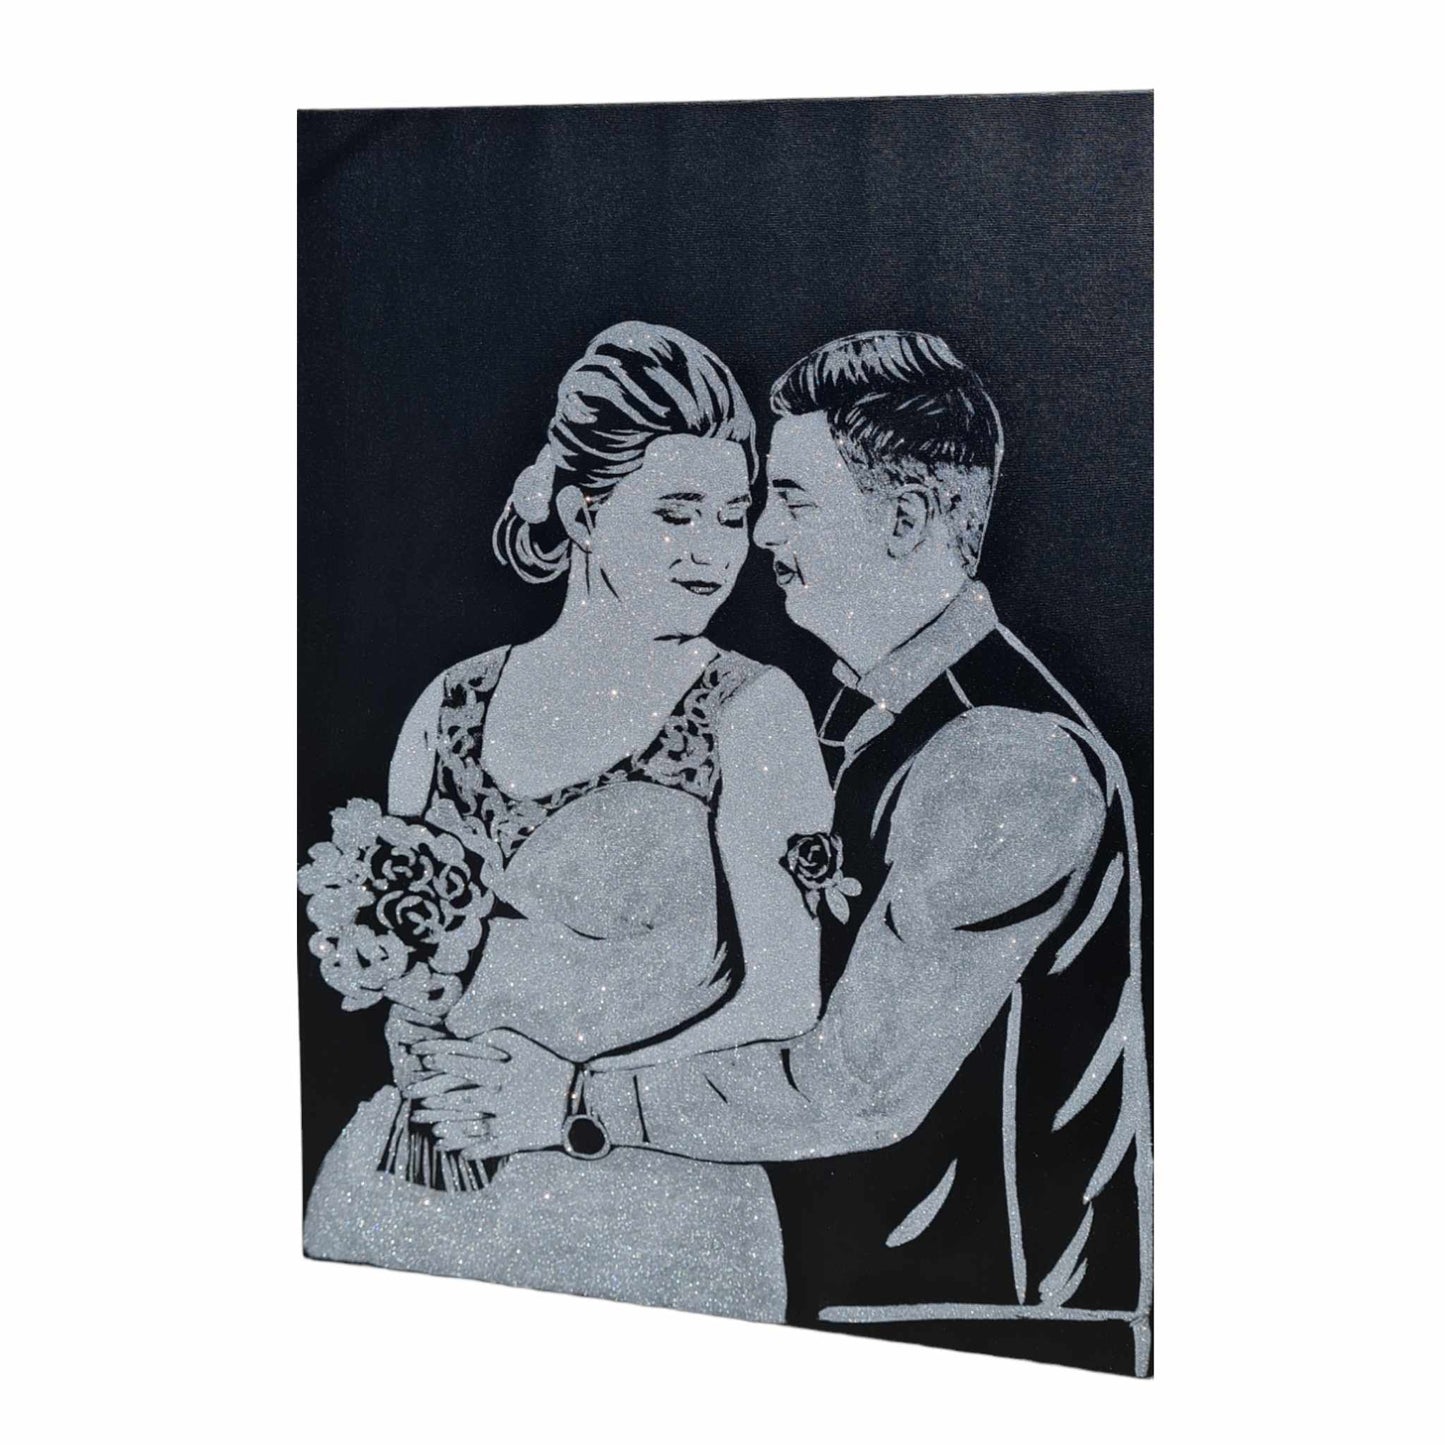 Tablou cu sclipici pentru miri, pictat manual si personalizat dupa poza clientului pe panza canvas de 100x80 cm.